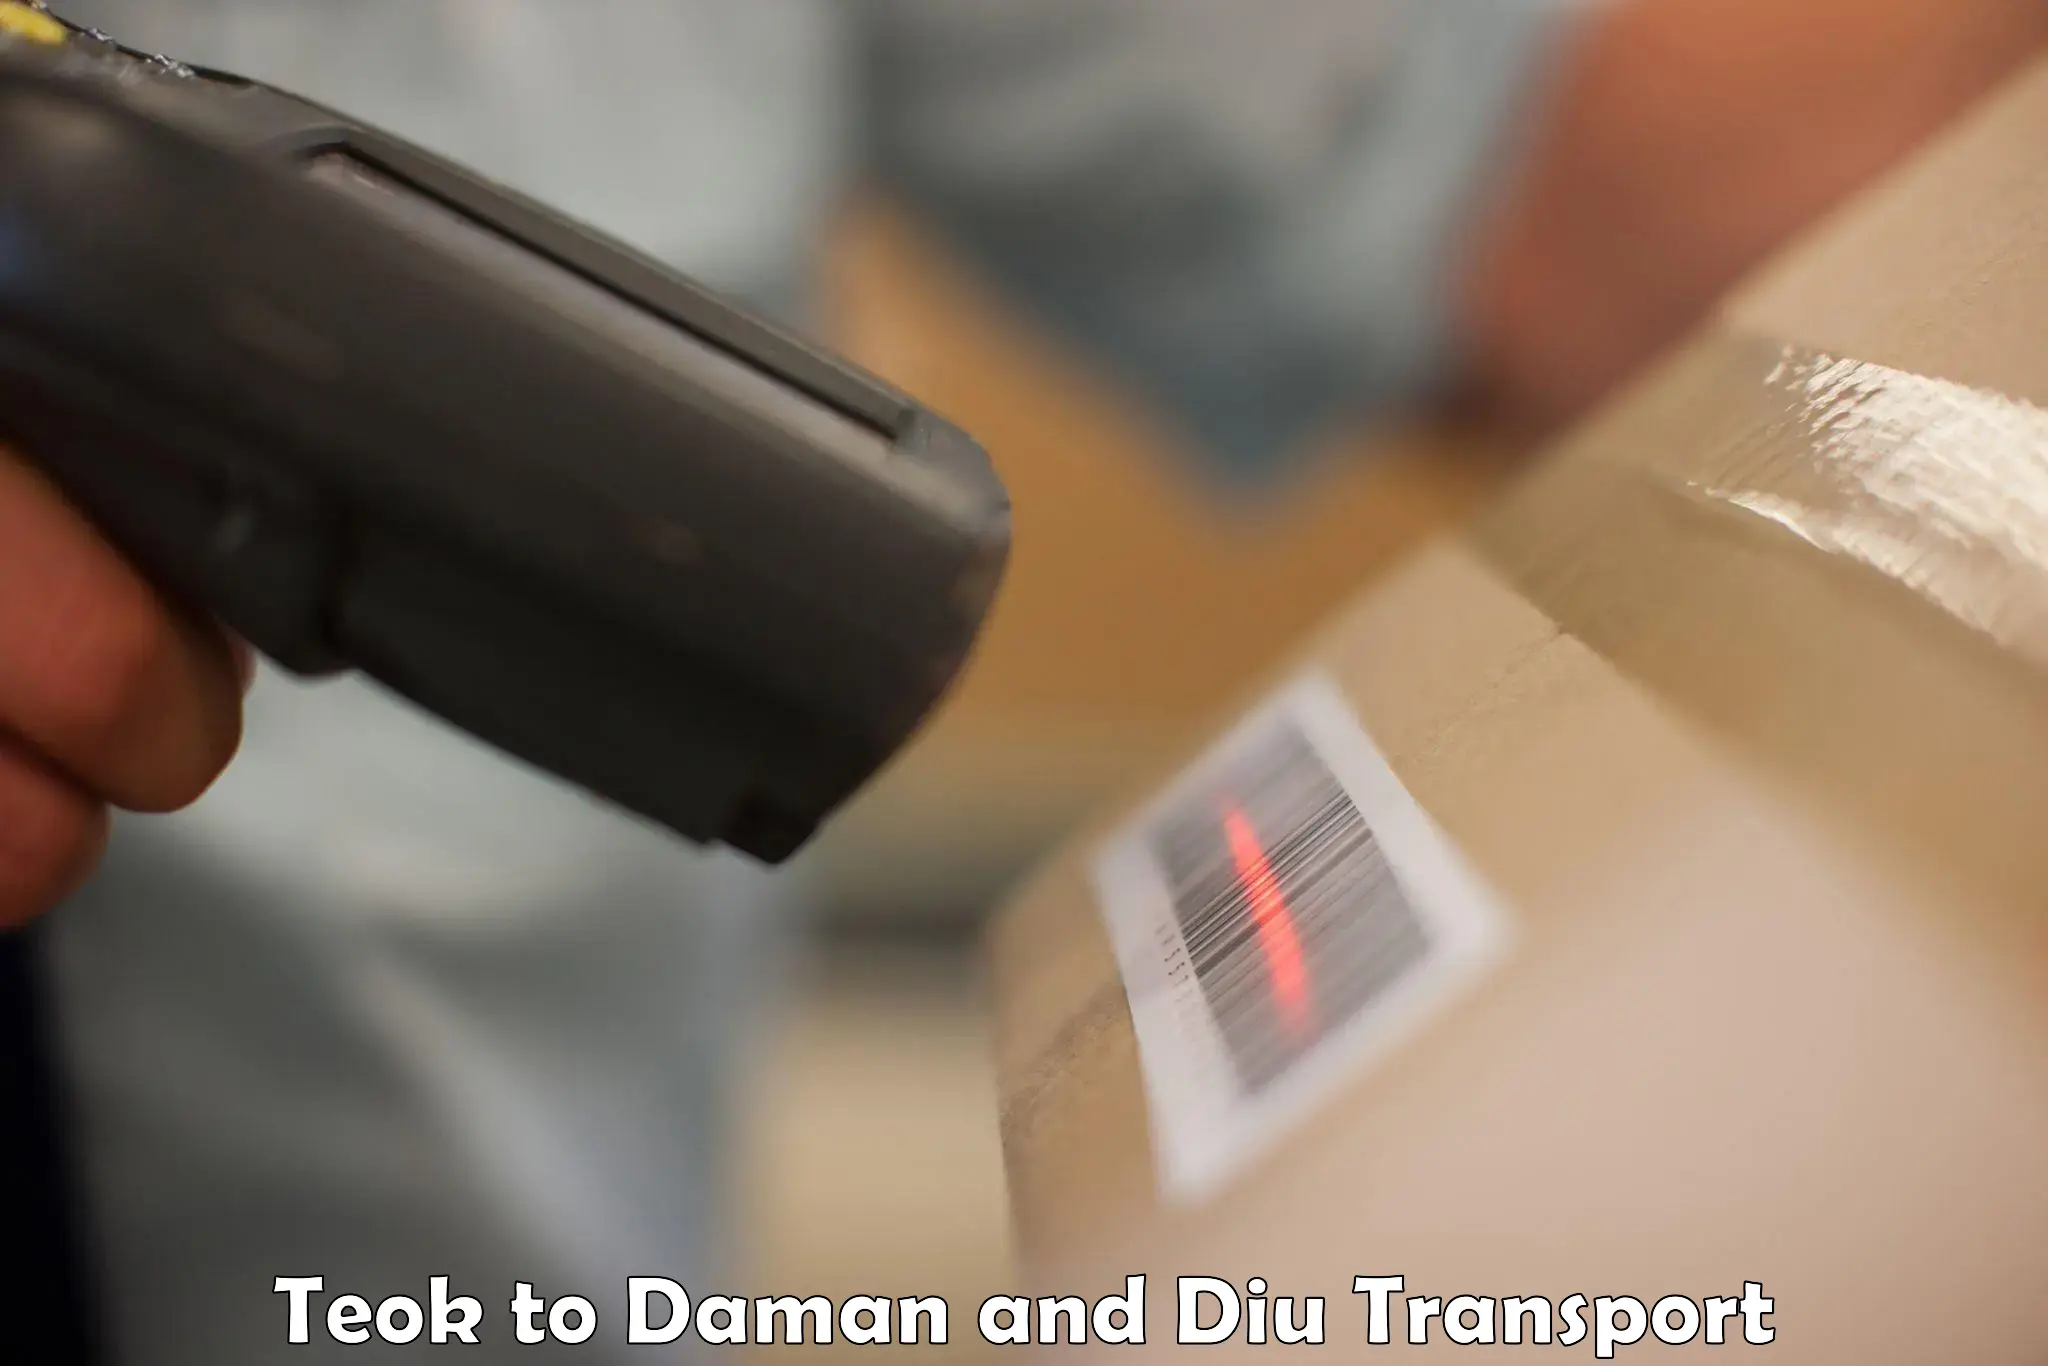 Furniture transport service Teok to Daman